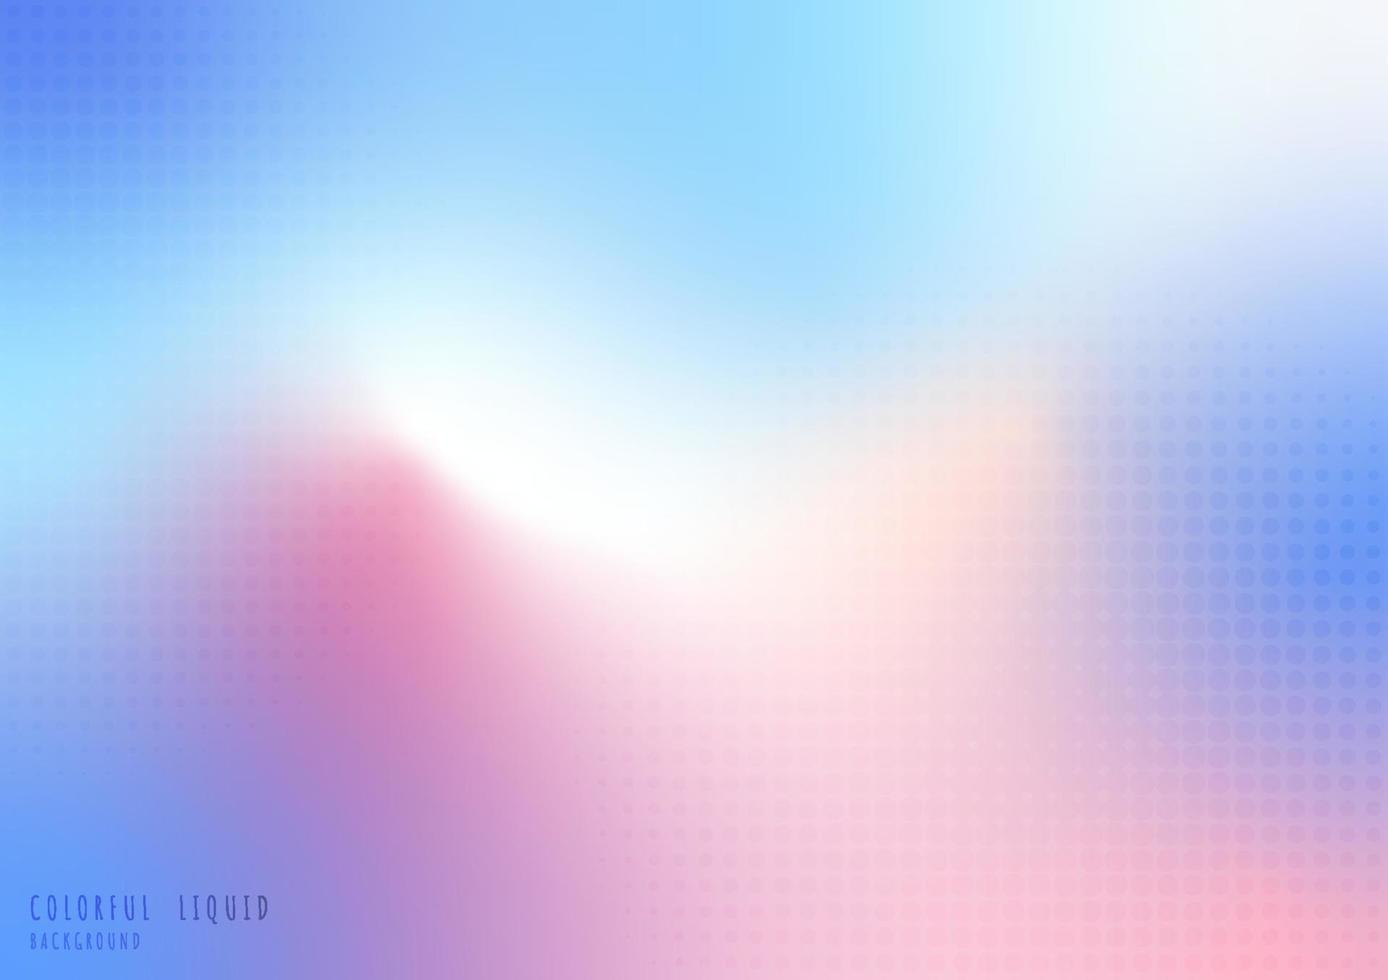 astratta luquid colorato gradiente maglia con disegno decorativo motivo a semitono circolare. sovrapposizione per lo sfondo del design del modello. illustrazione vettoriale